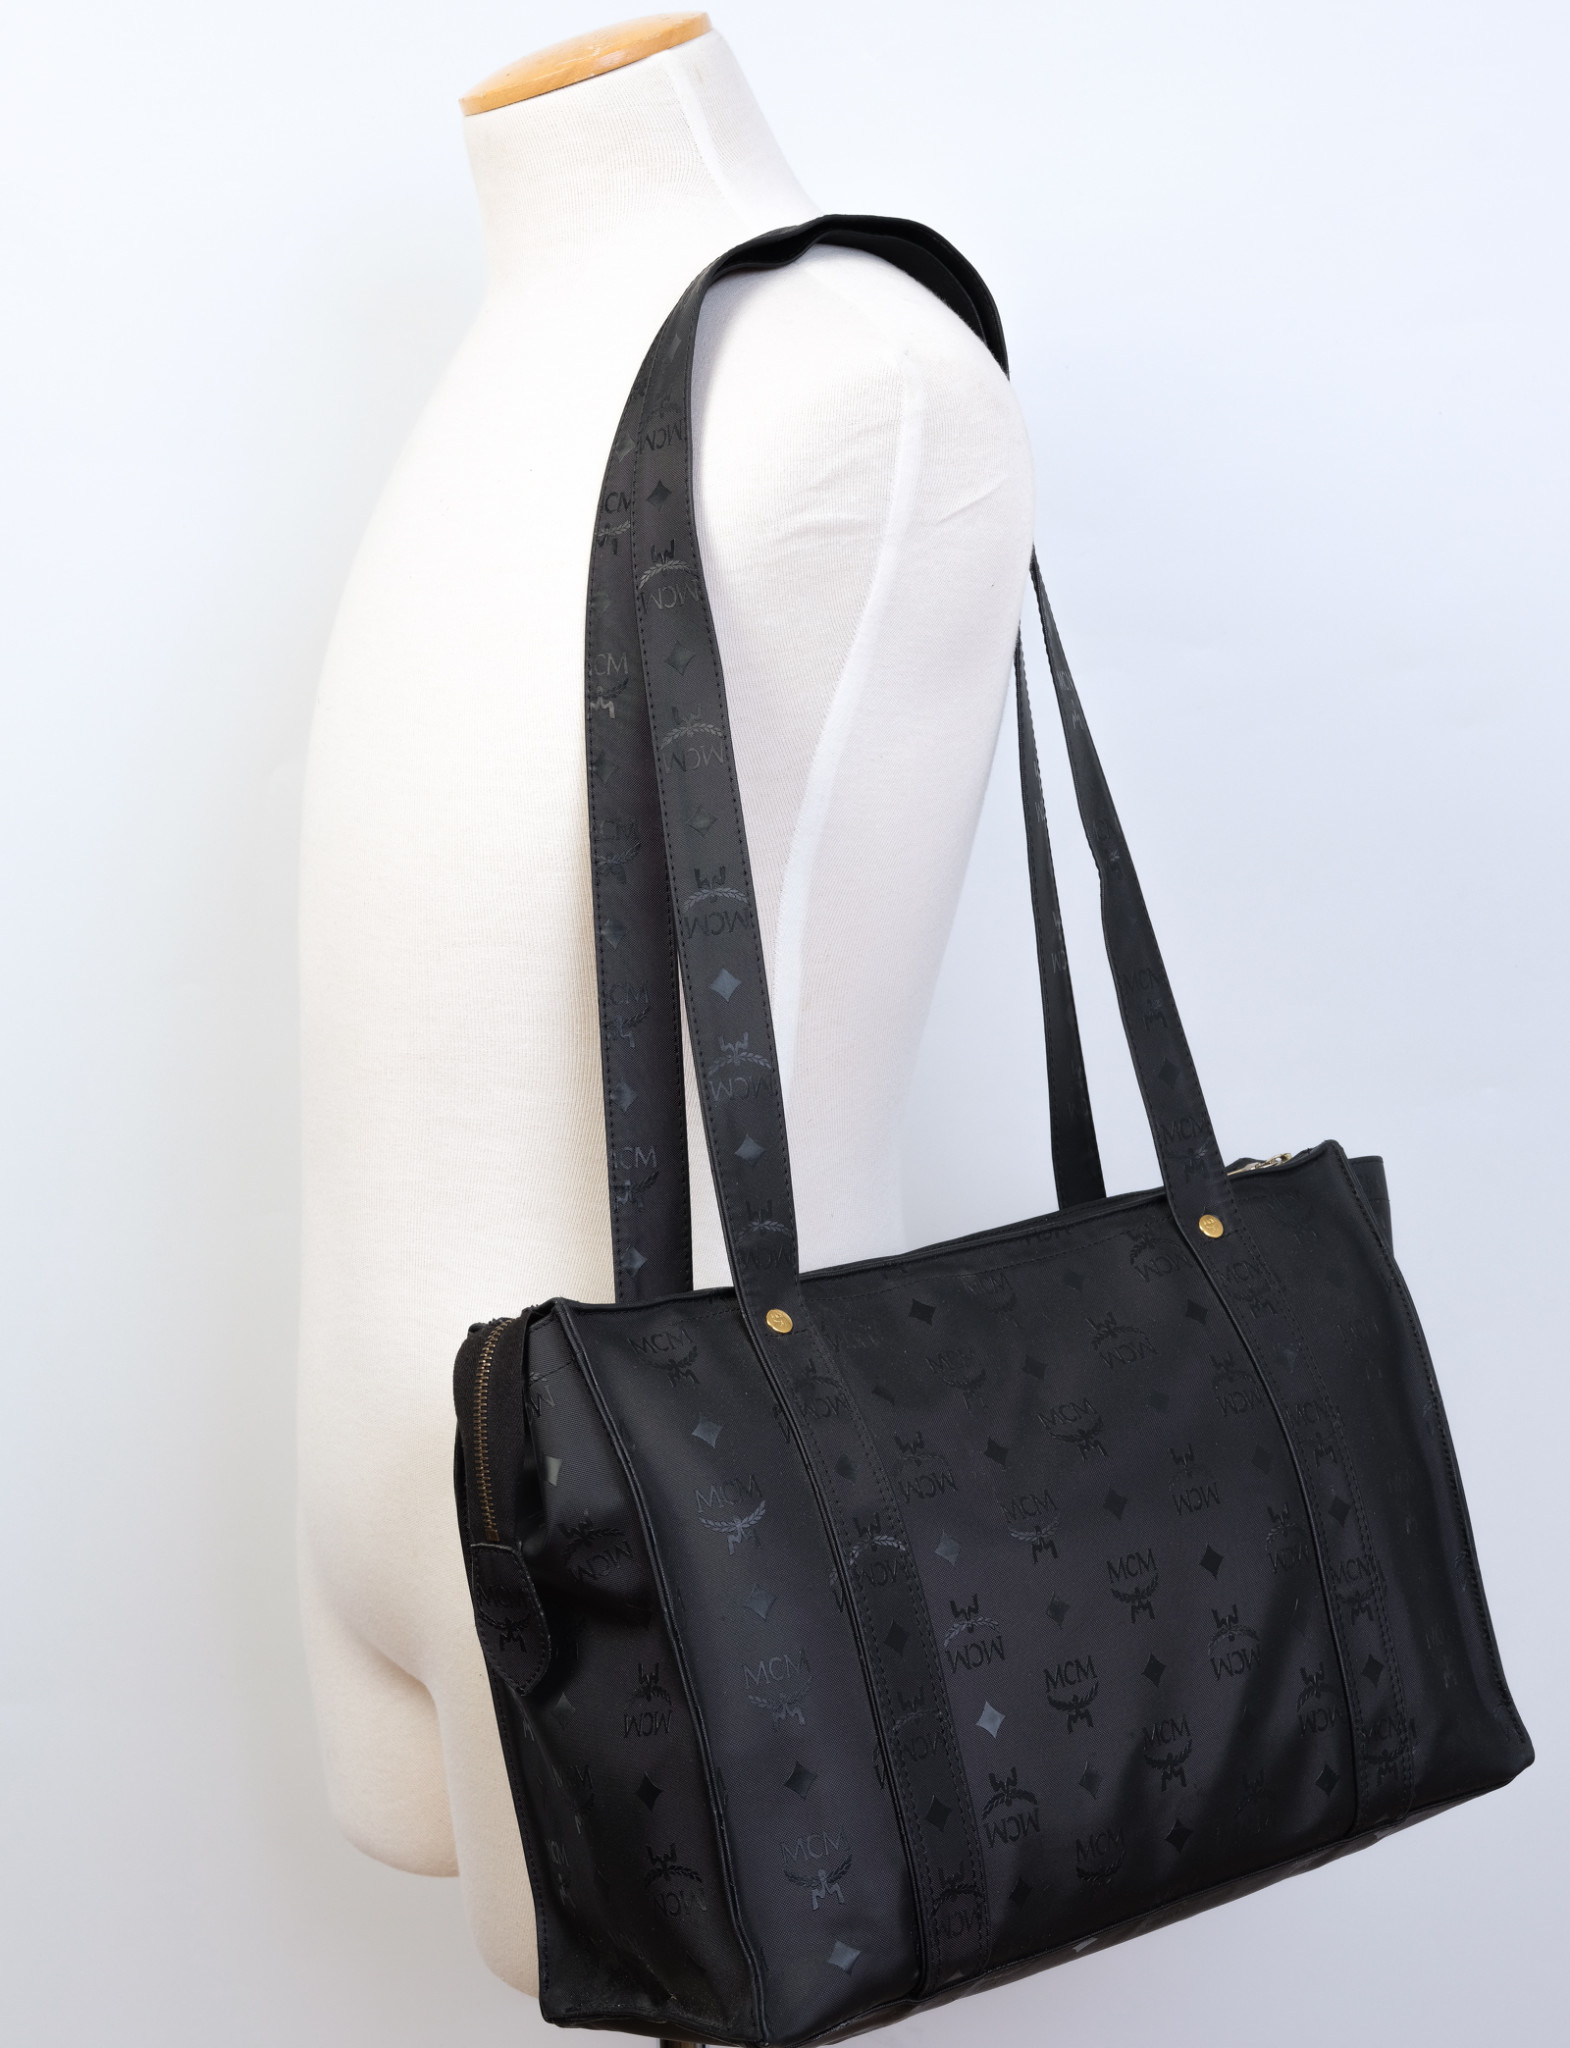 MCM VINTAGE BLACK SHOULDER BAG  Black shoulder bag, Black leather satchel,  Denim shoulder bags